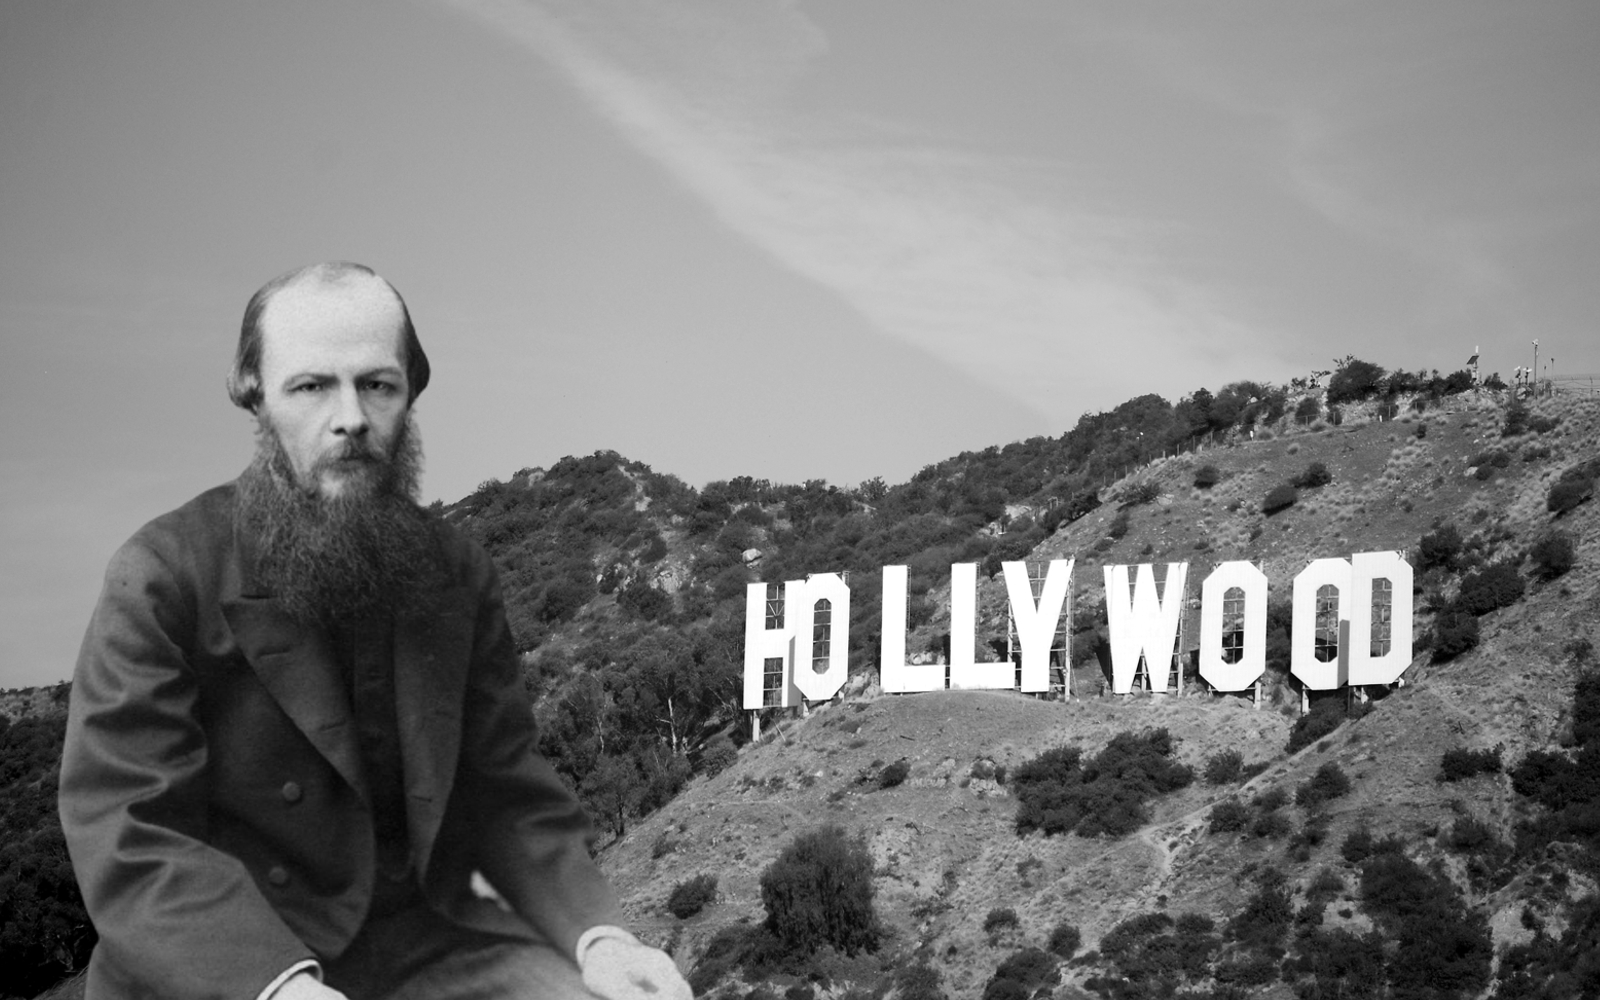 Как Федор Достоевский покорял Голливуд, или книги-фавориты зарубежных звезд